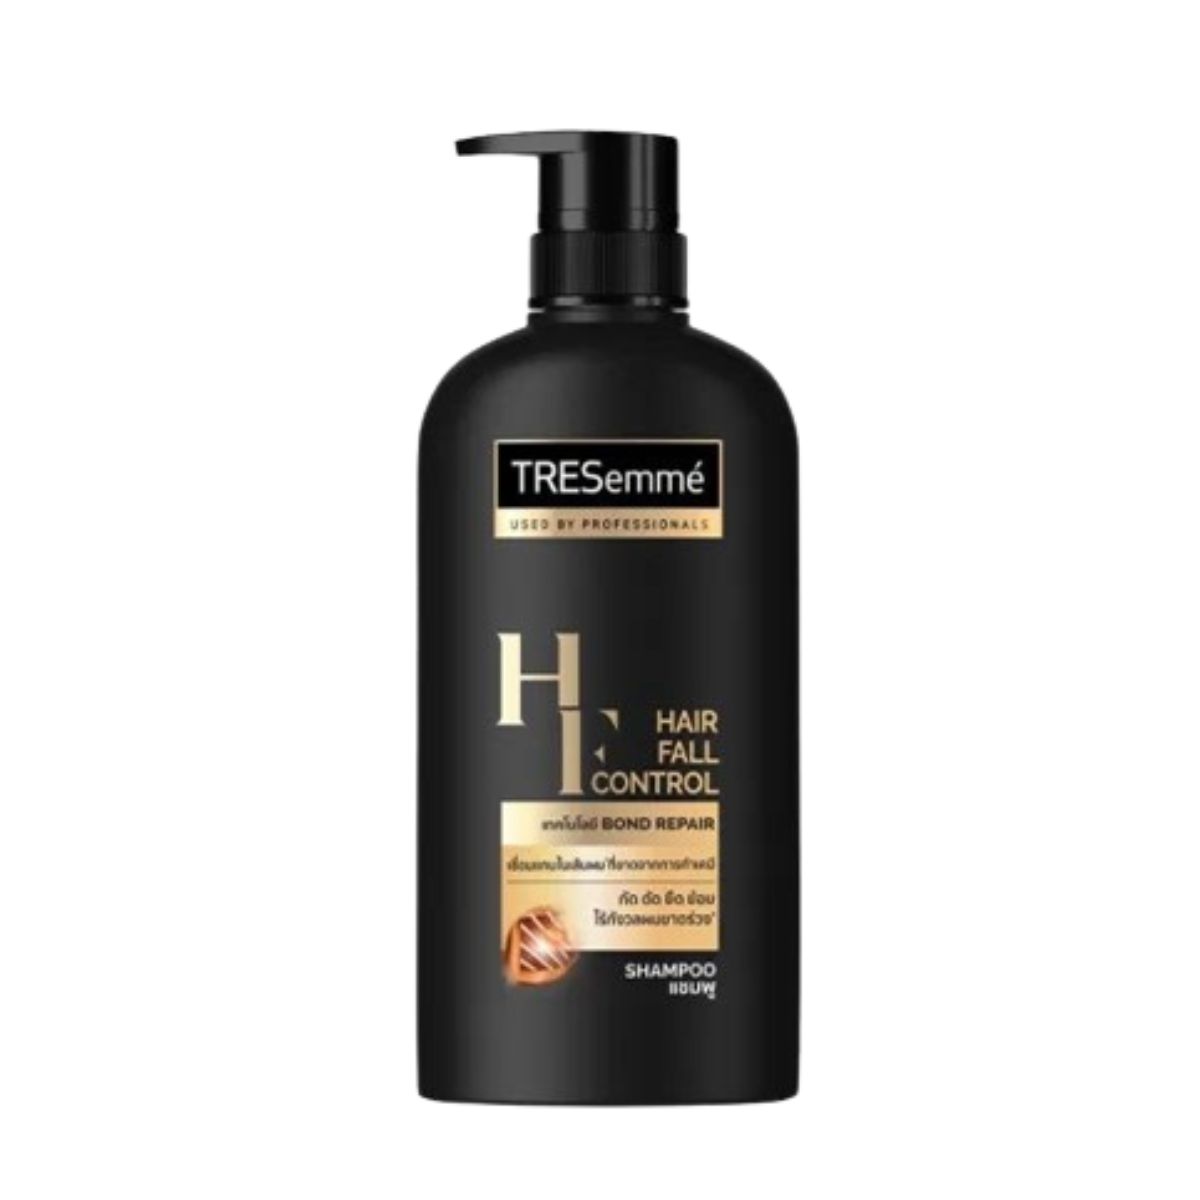 Tresemme Hair Fall Control Bond Repair Shampoo - 450ml